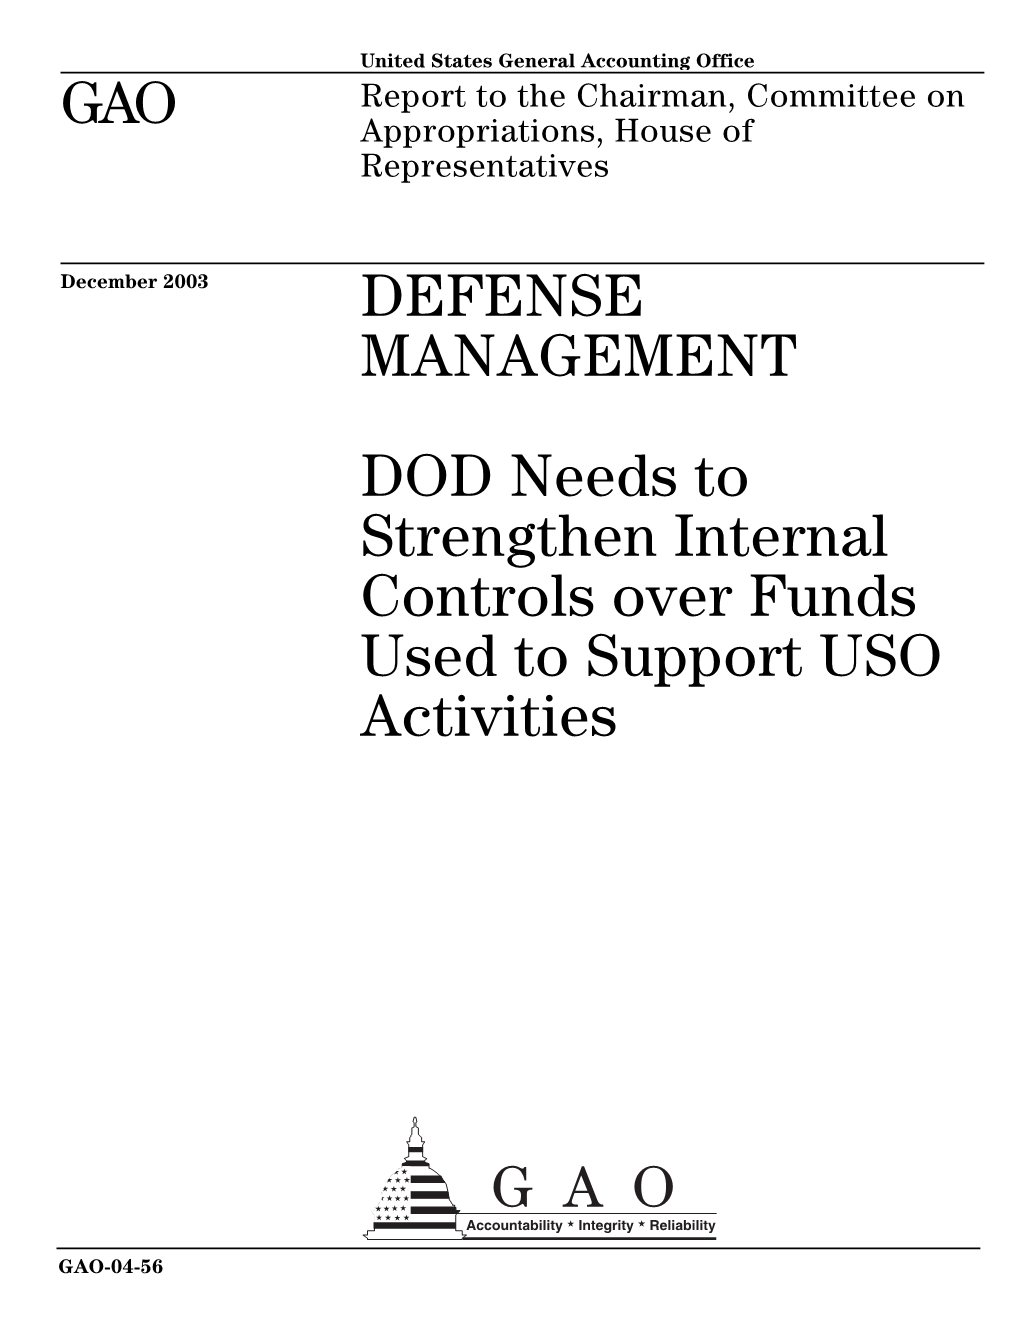 GAO-04-56 Defense Management: DOD Needs to Strengthen Internal